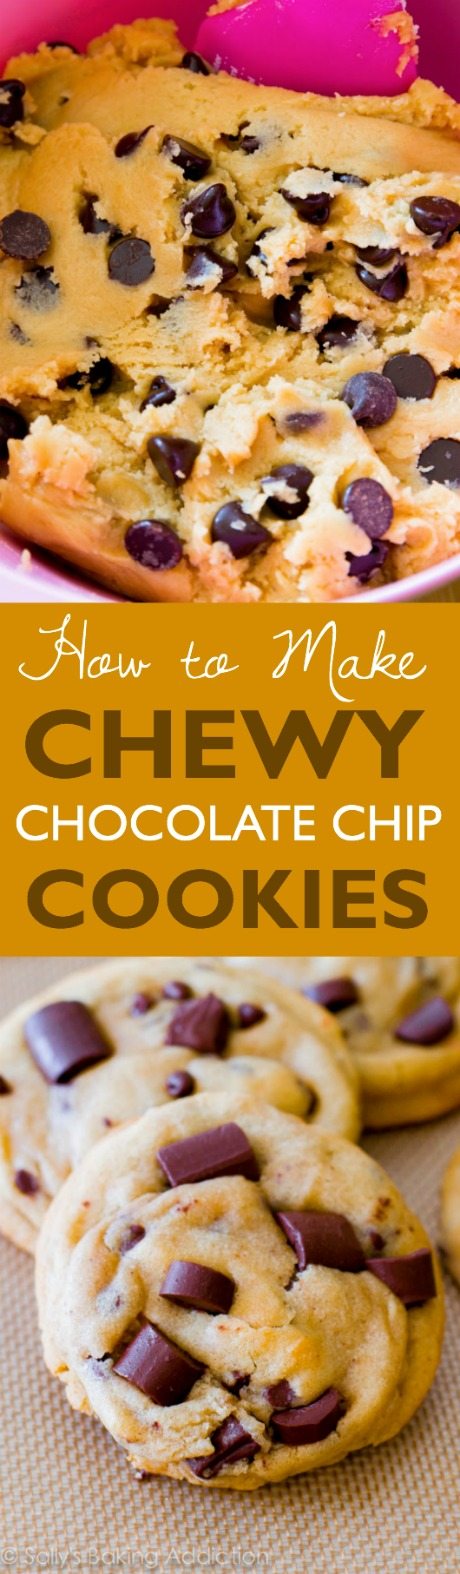 Les biscuits Chewy Chocolate Chunk ont été épinglés sur Pinterest plus d’un million de fois. Ma recette la plus populaire!